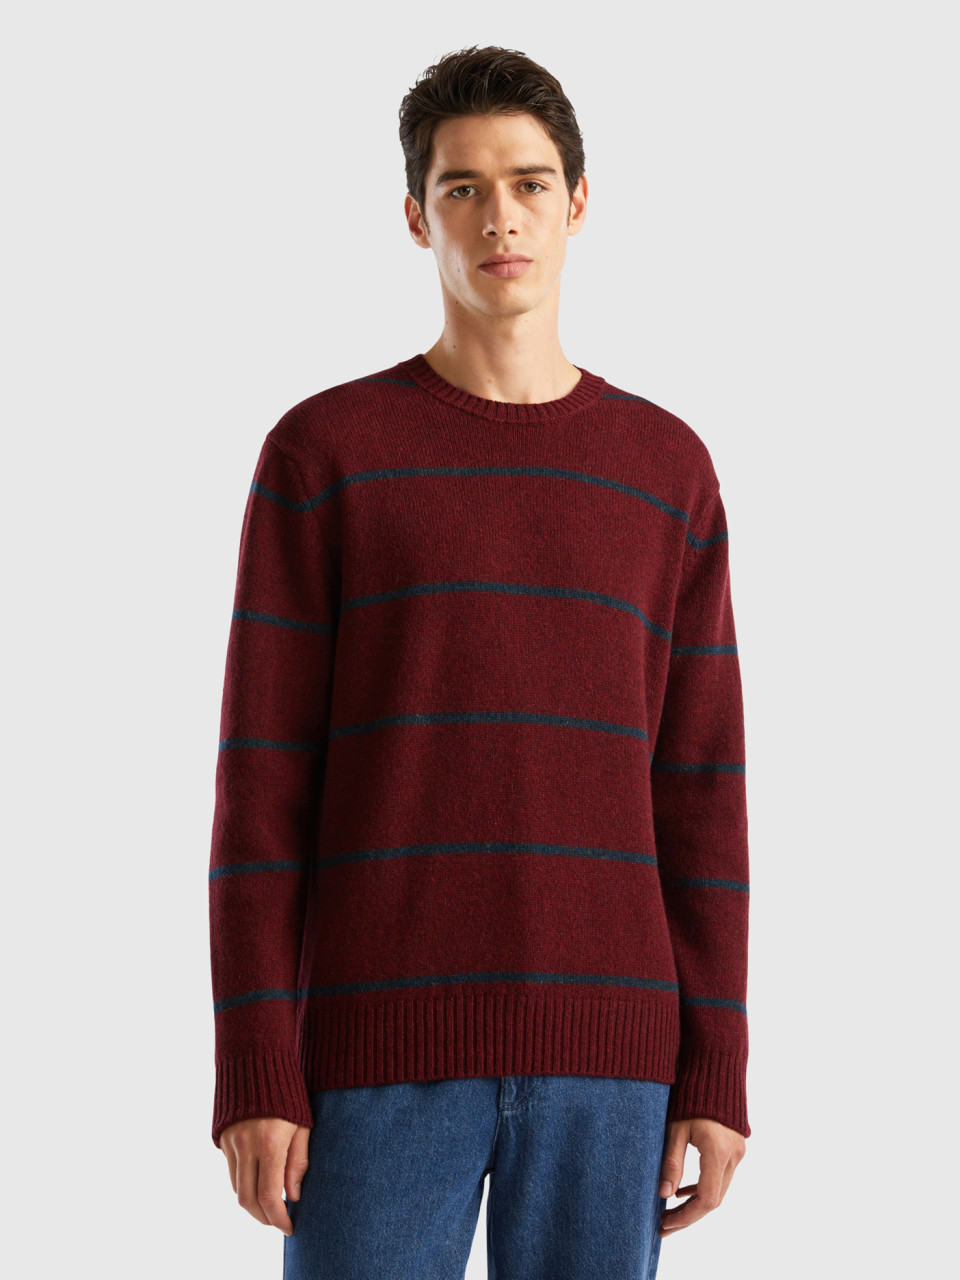 Benetton, Sweater In Pure Shetland Wool, Burgundy, Men